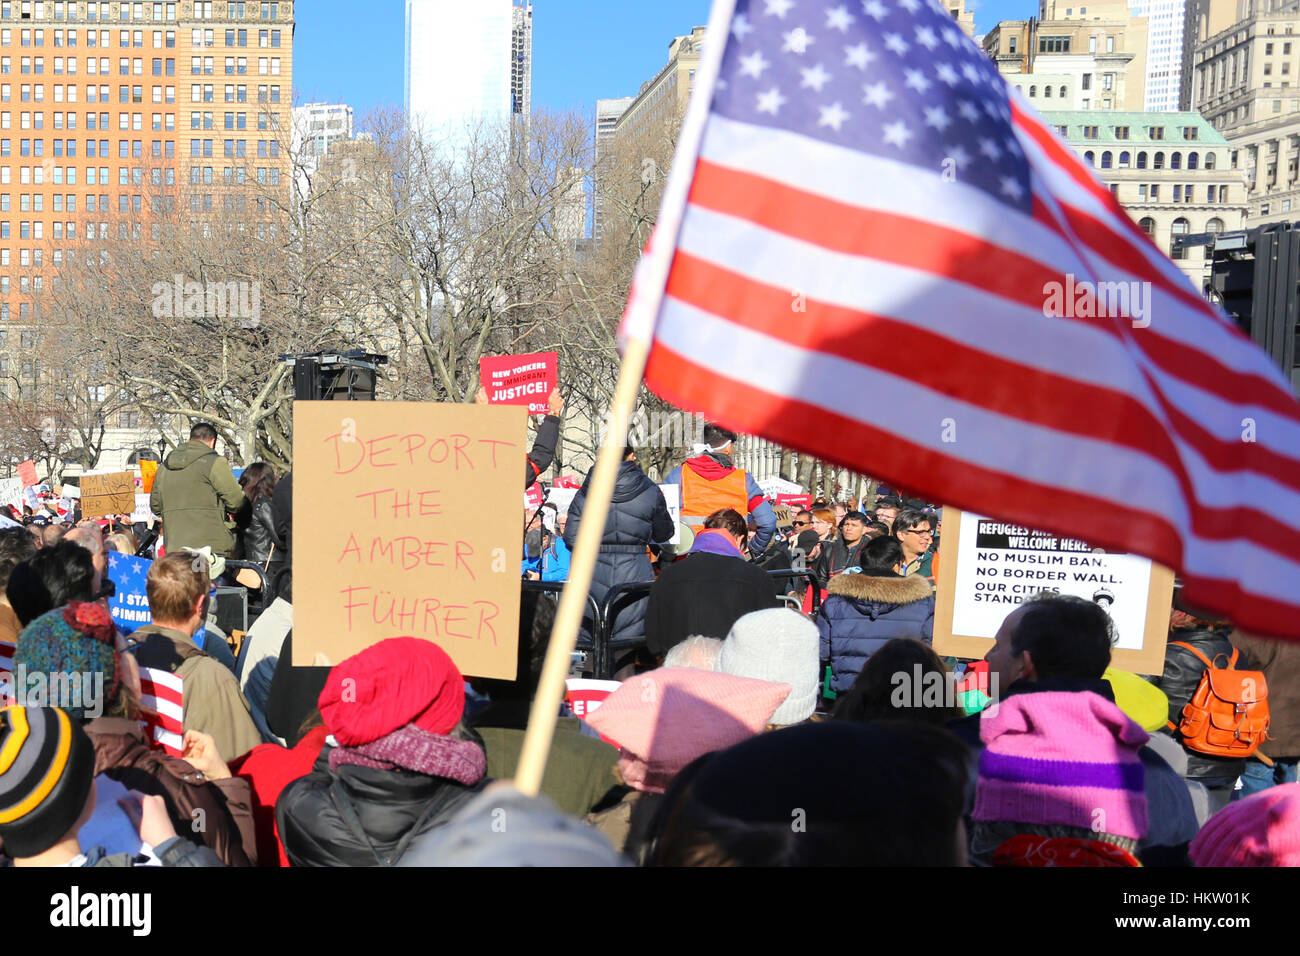 Nueva York, EE.UU. 29 de enero de 2017. Los neoyorquinos se reunieron en Battery Park preocupados por la reciente prohibición de los refugiados y los musulmanes por parte de Donald Trump. Quieren enviar un mensaje que los inmigrantes y los refugiados son bienvenidos aquí, y que protegerán los derechos de todos. 29 de enero de 2017 Foto de stock